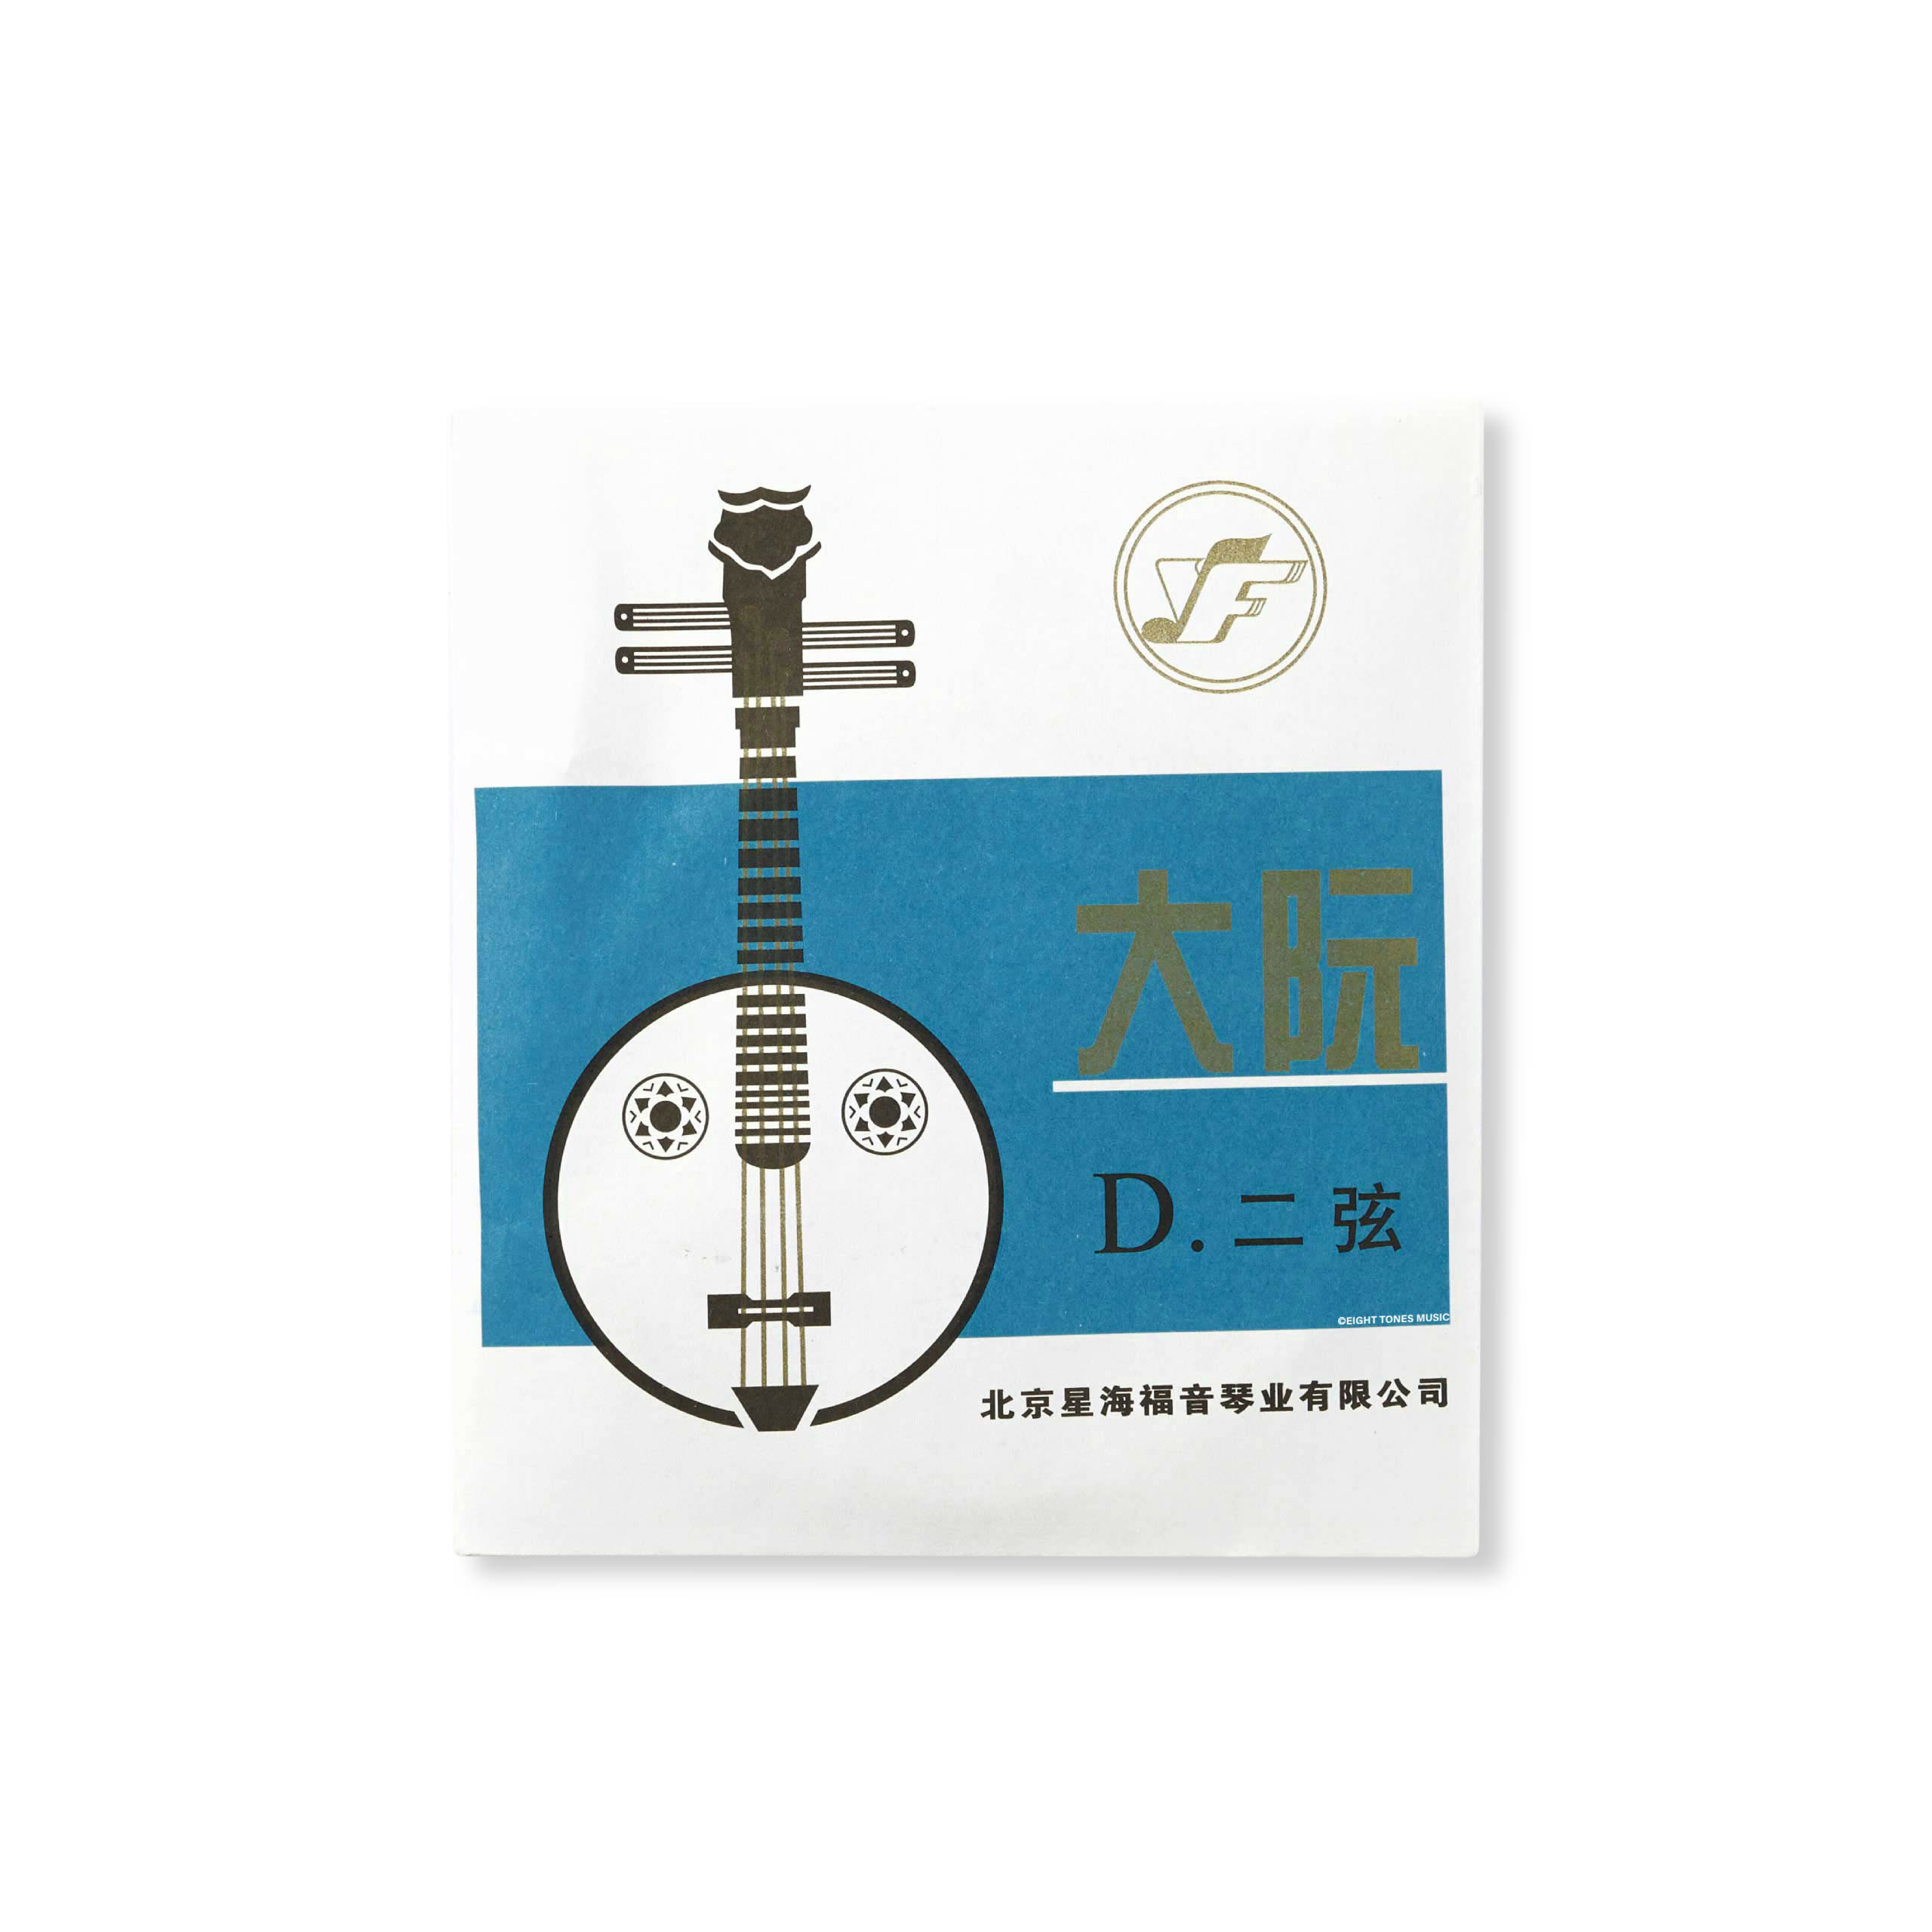 Xing Hai Daruan Strings 2